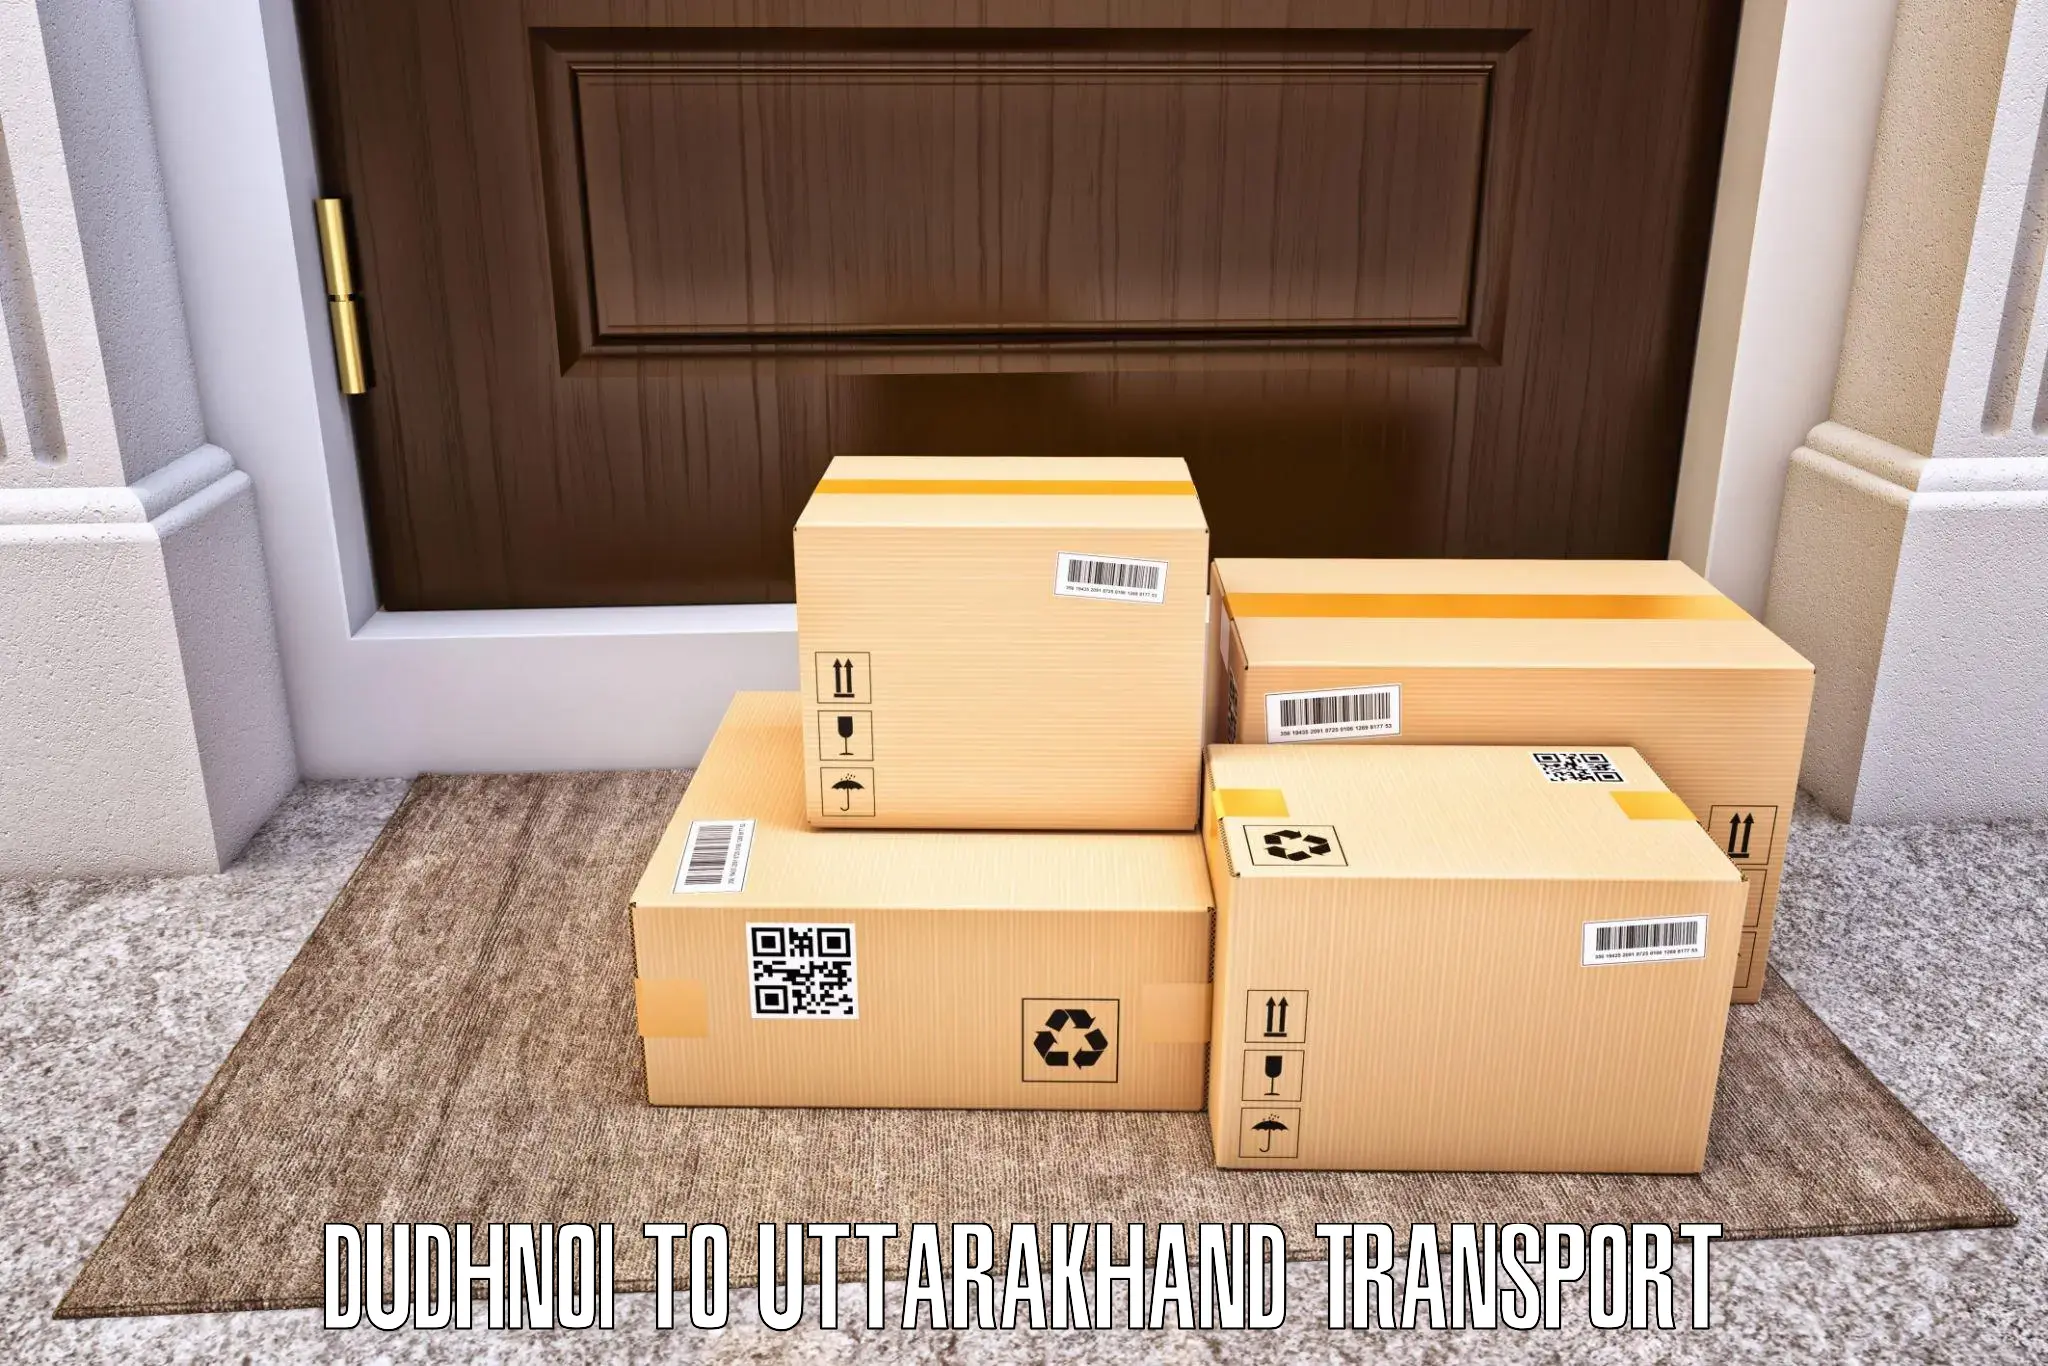 Two wheeler parcel service Dudhnoi to Dehradun